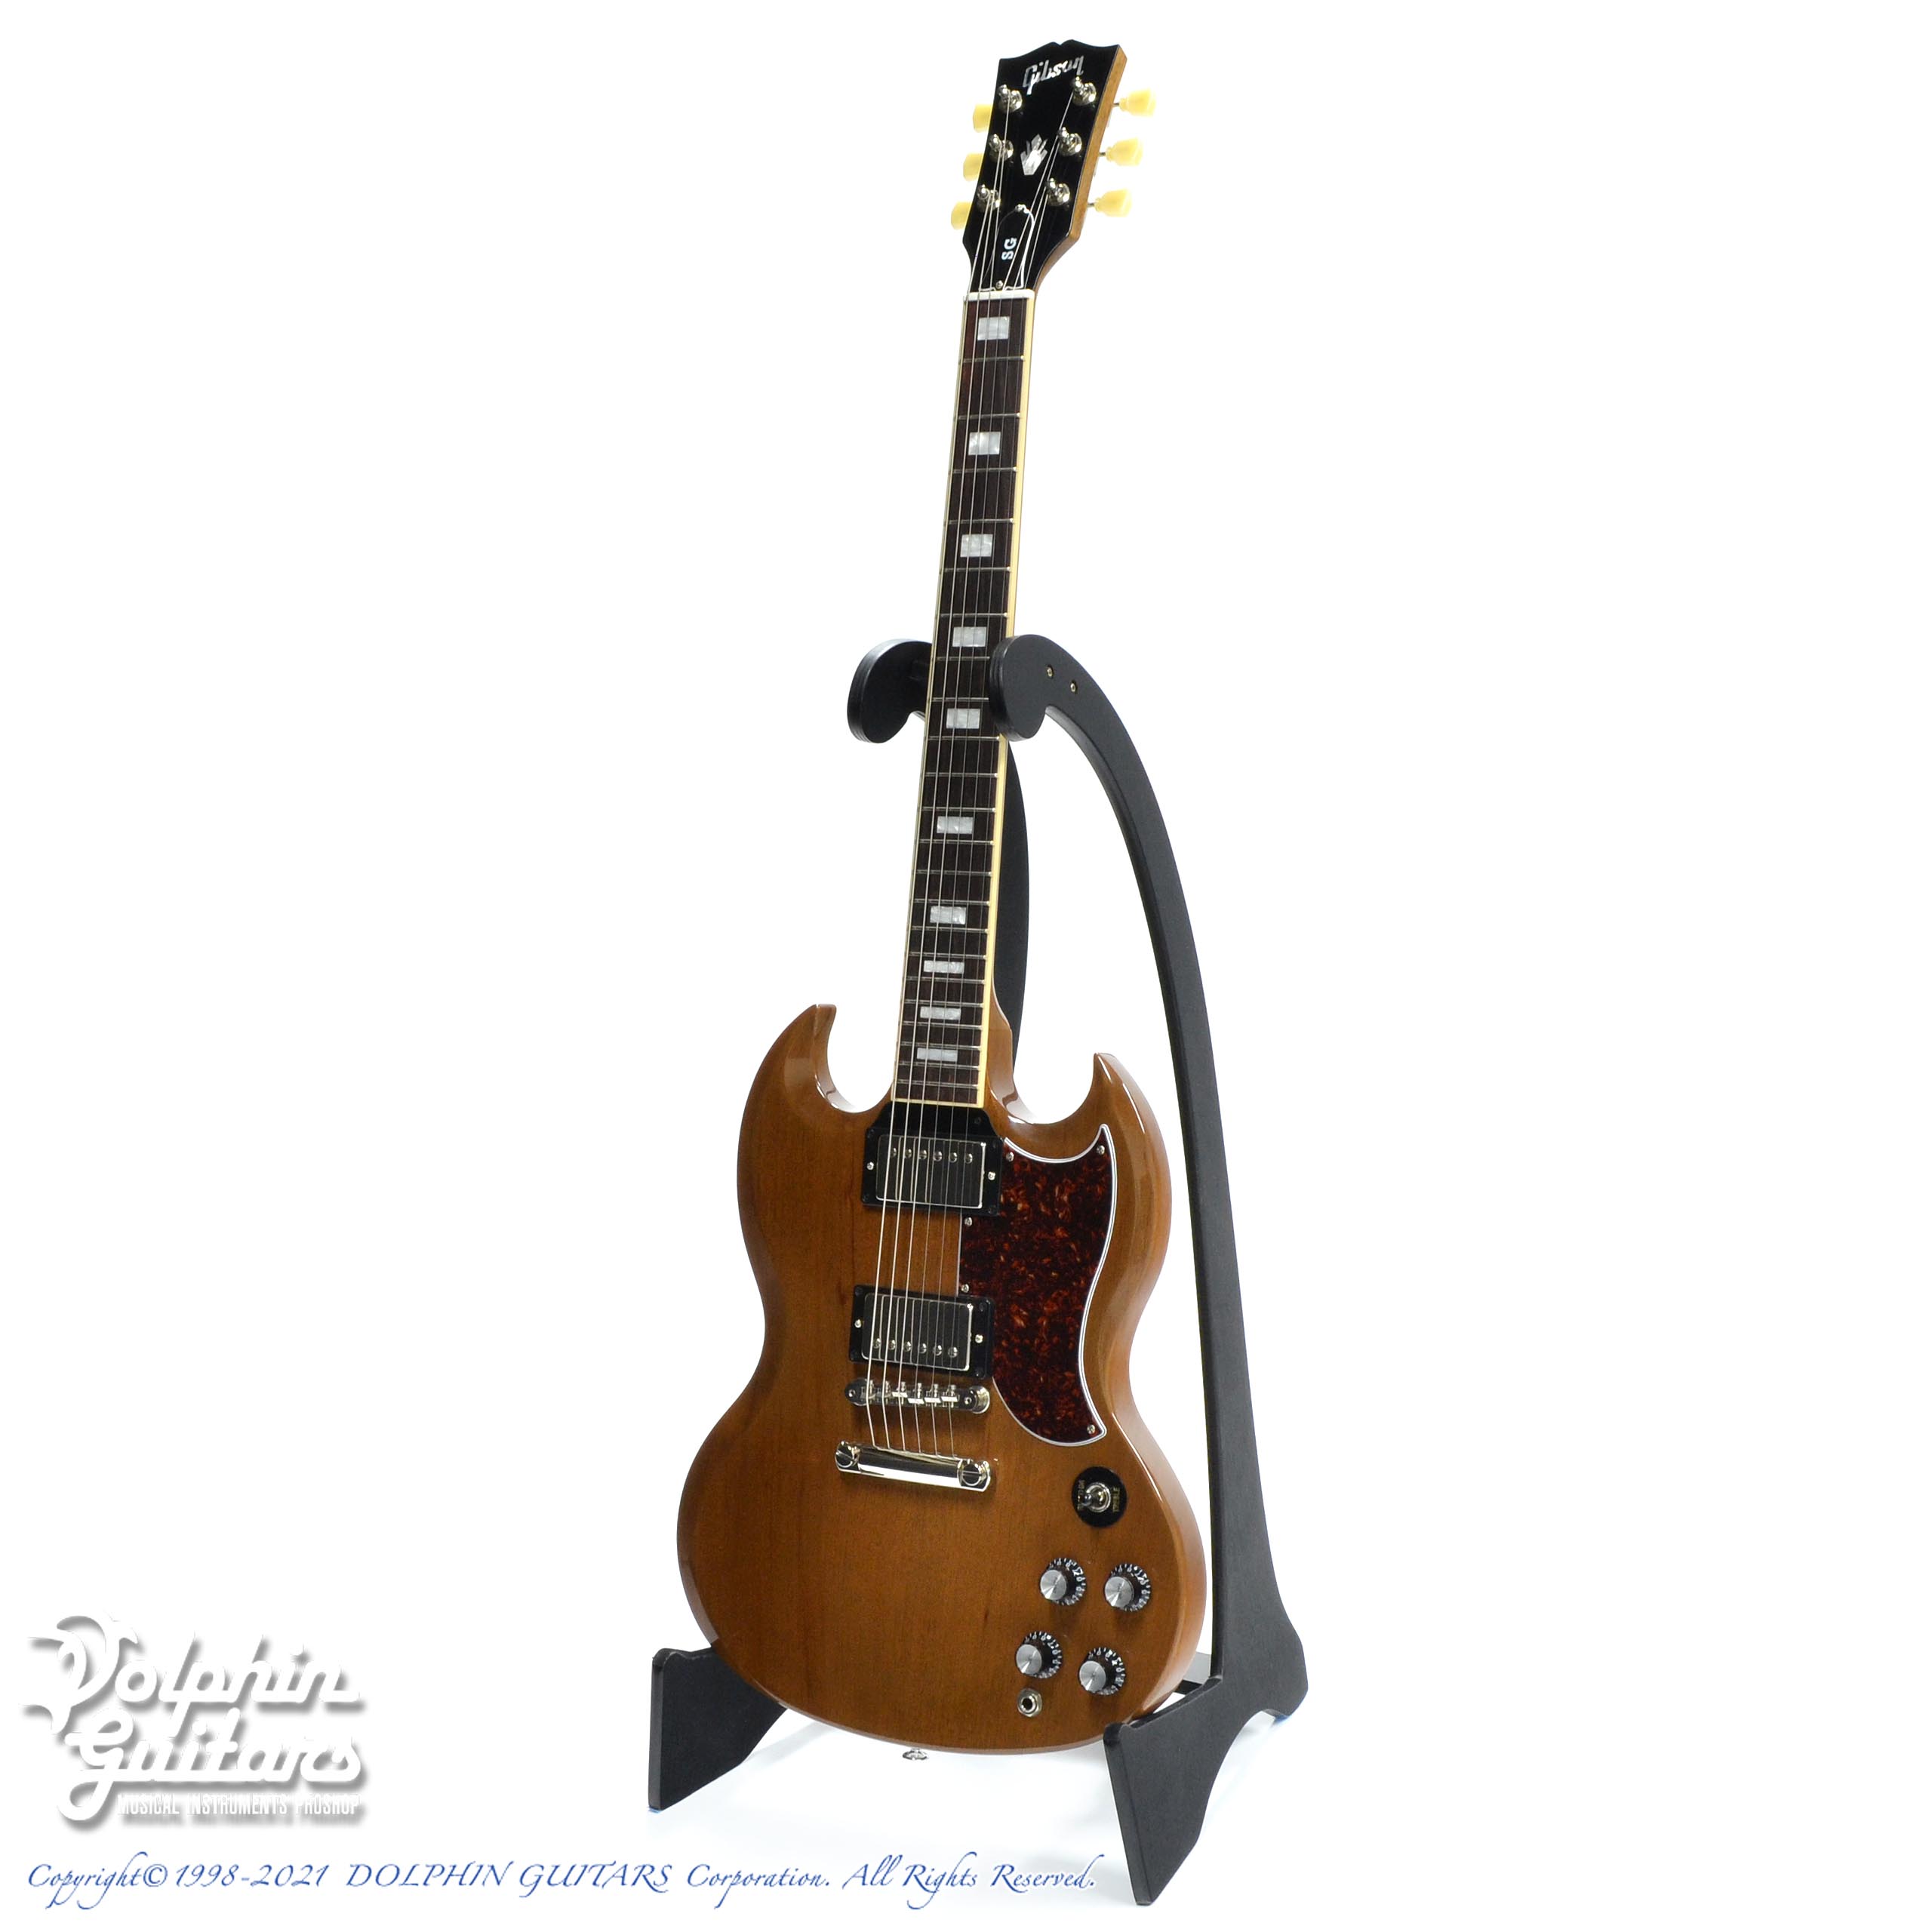 35400円通販値段 週末セール開催 Gibson SG スタンダード 楽器/器材